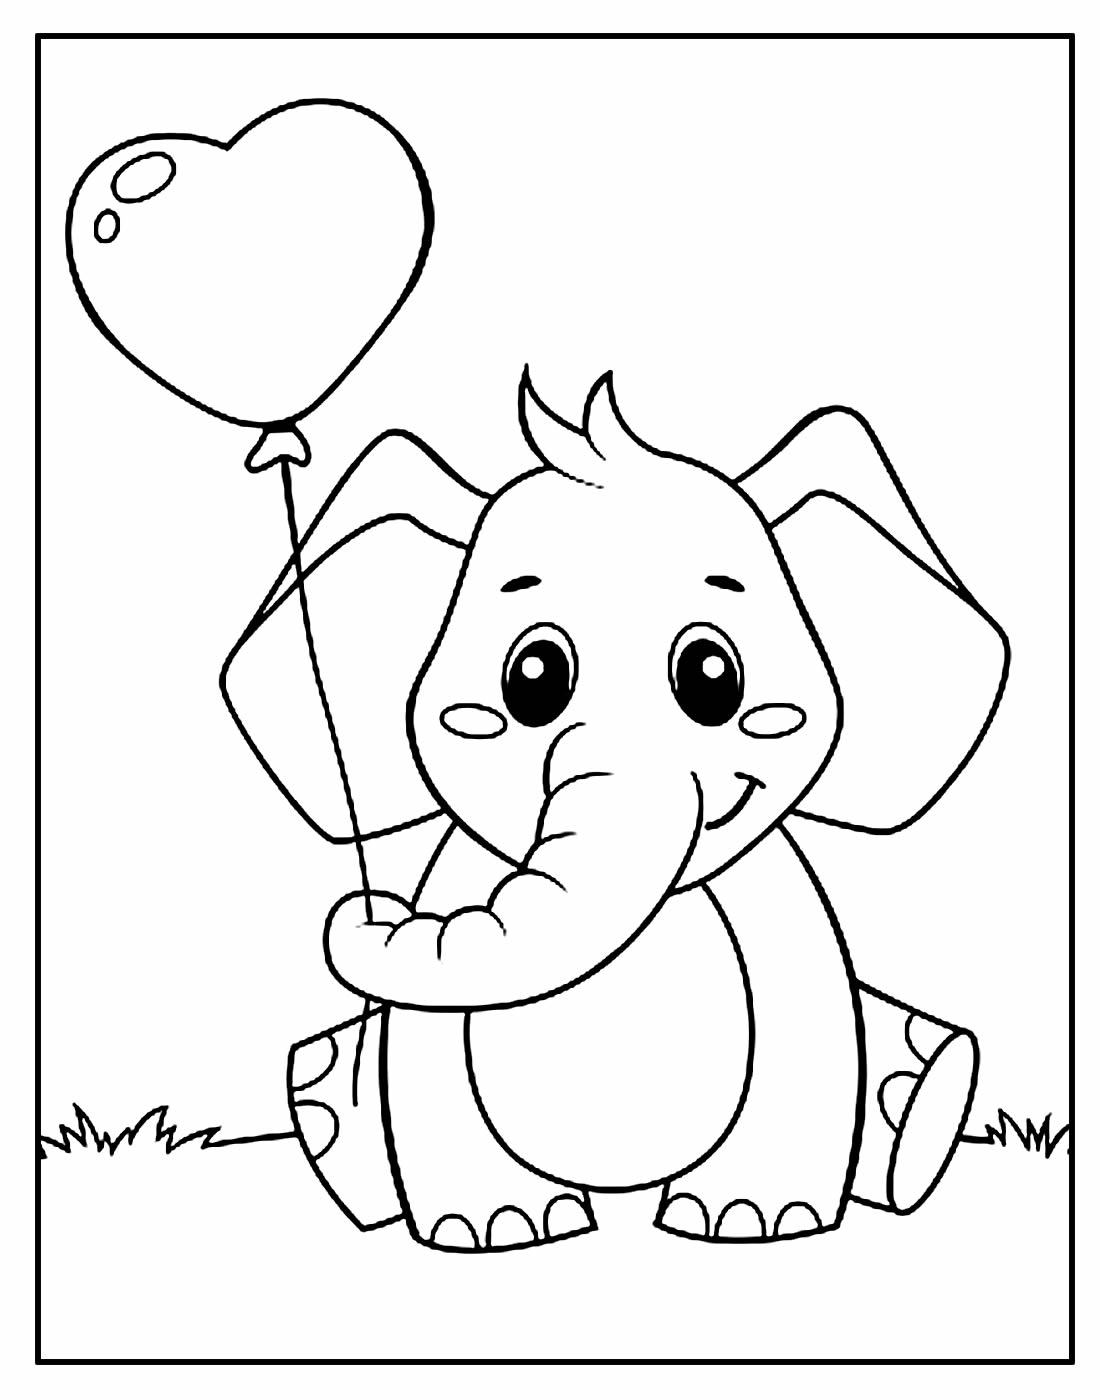 Desenho para colorir de Elefante